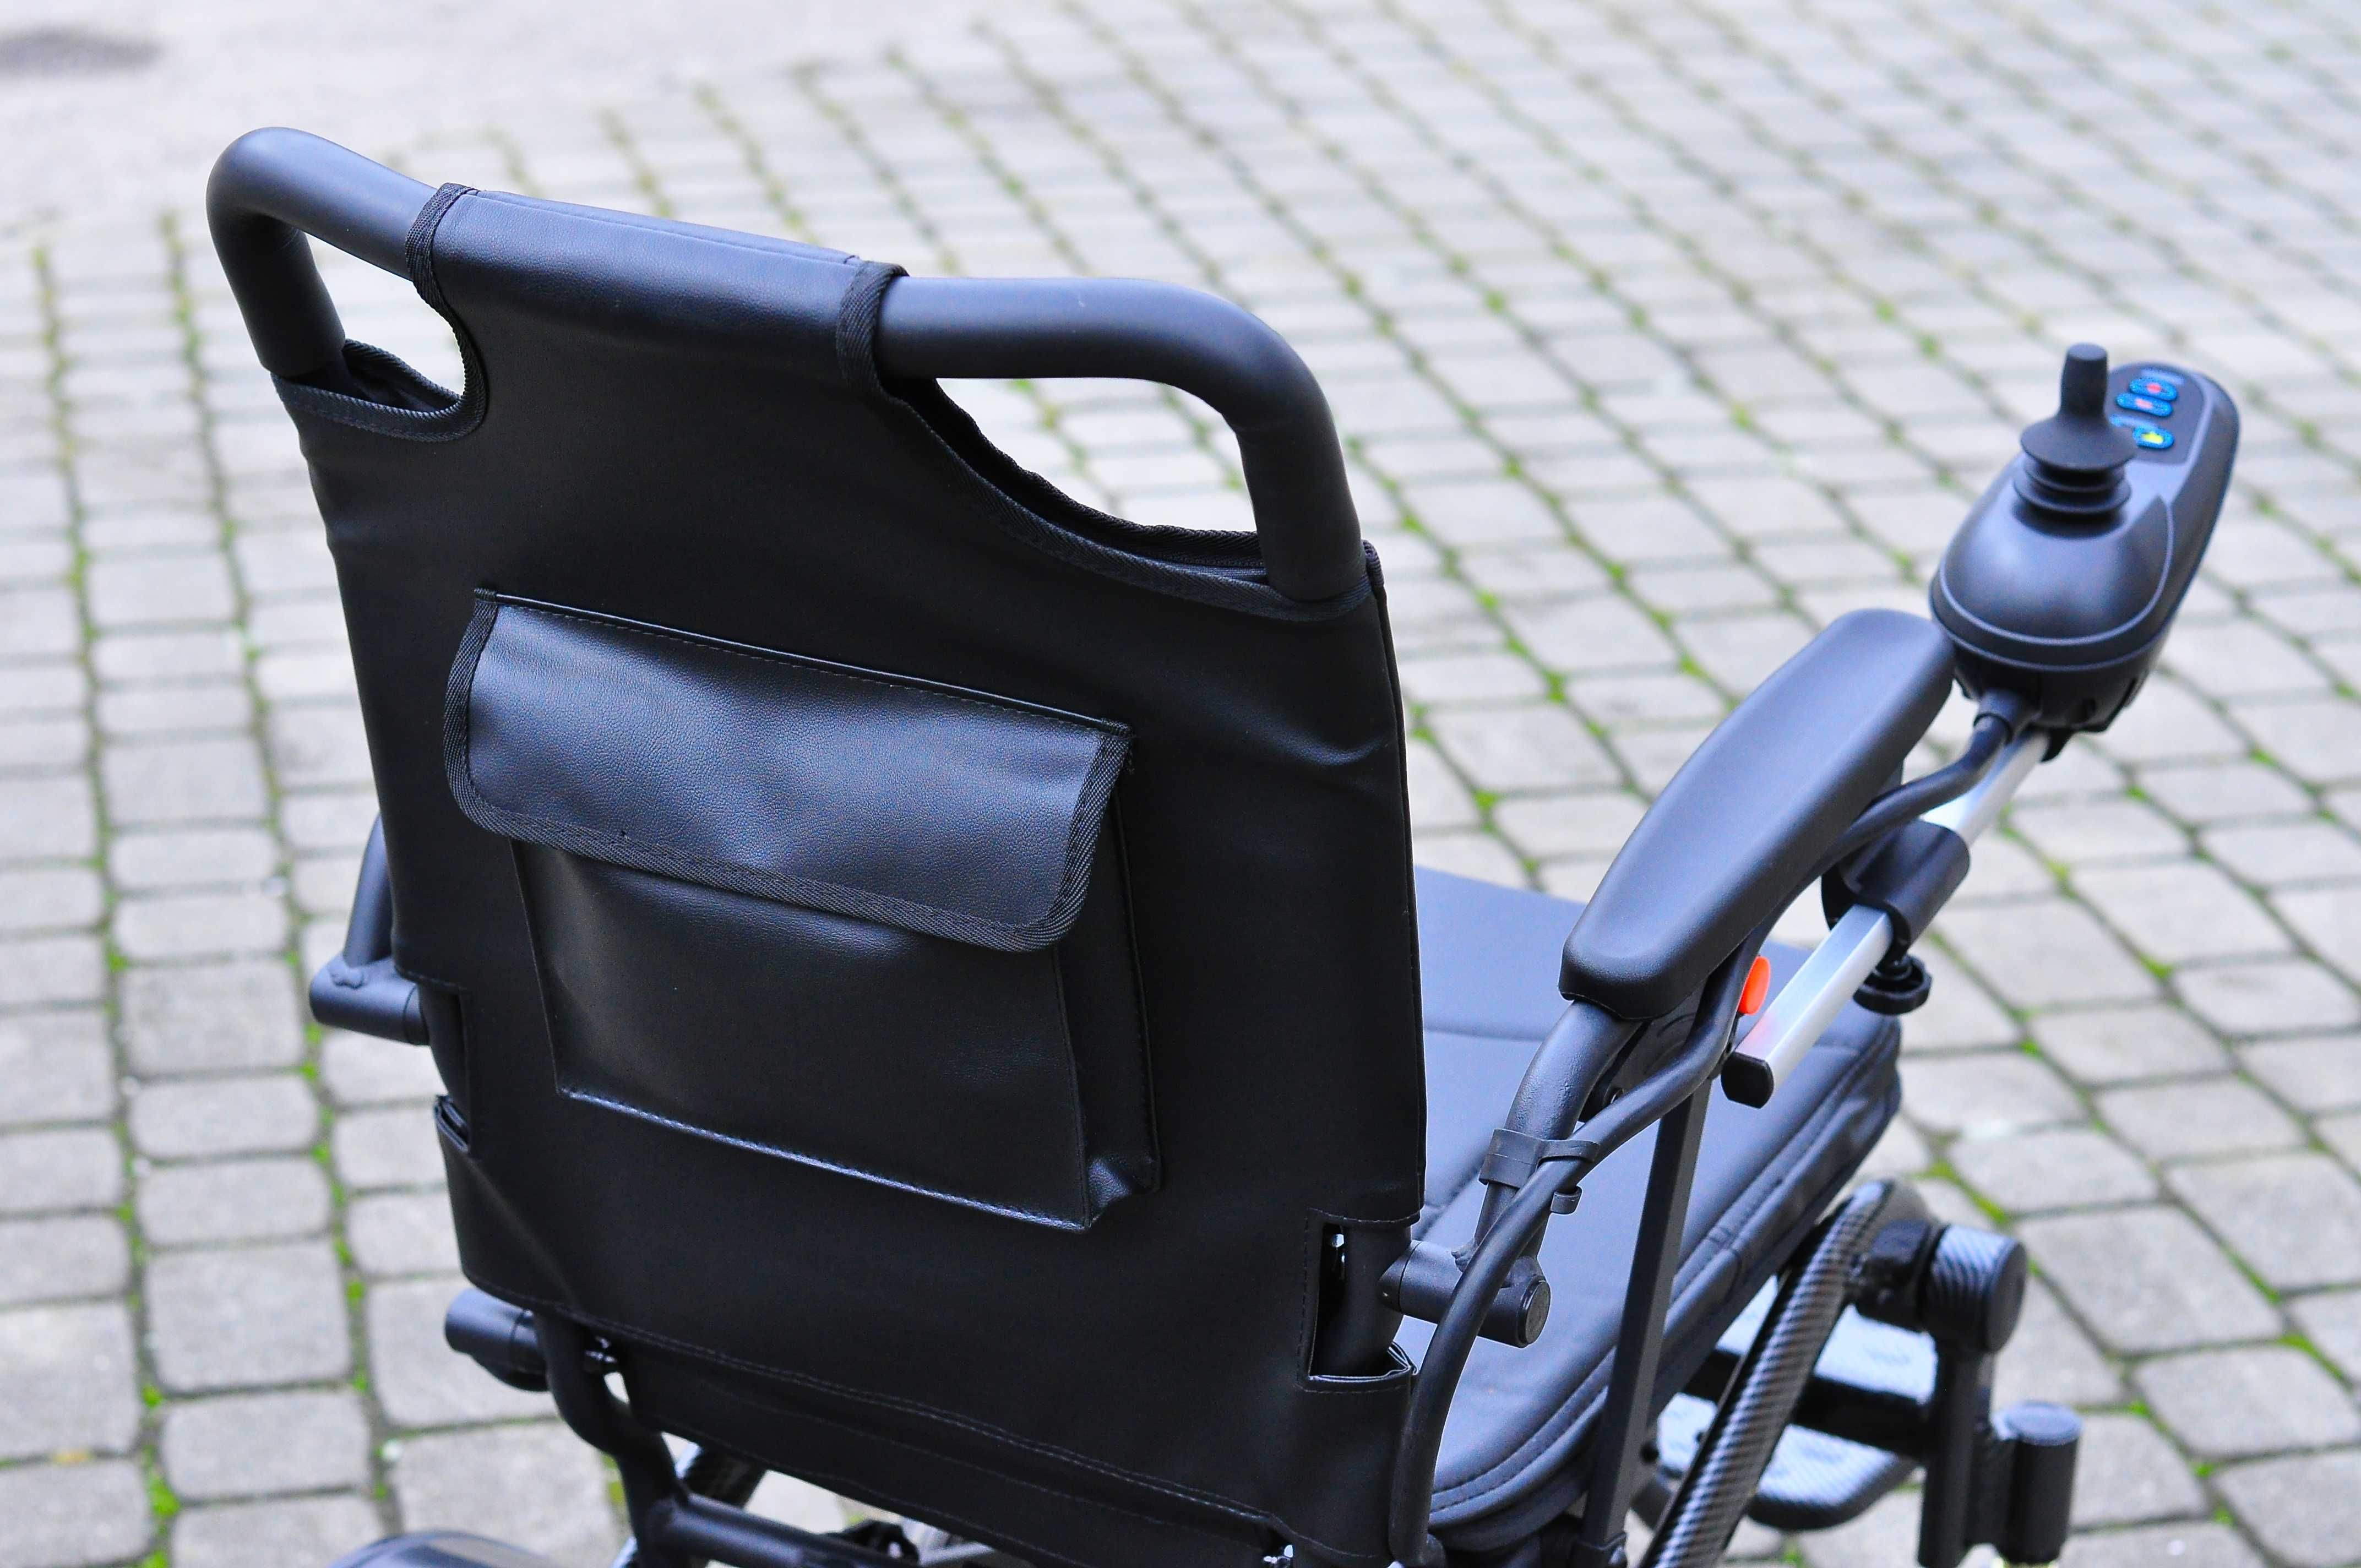 Wózek inwalidzki elektryczny EVA BZ z dofinansowaniem